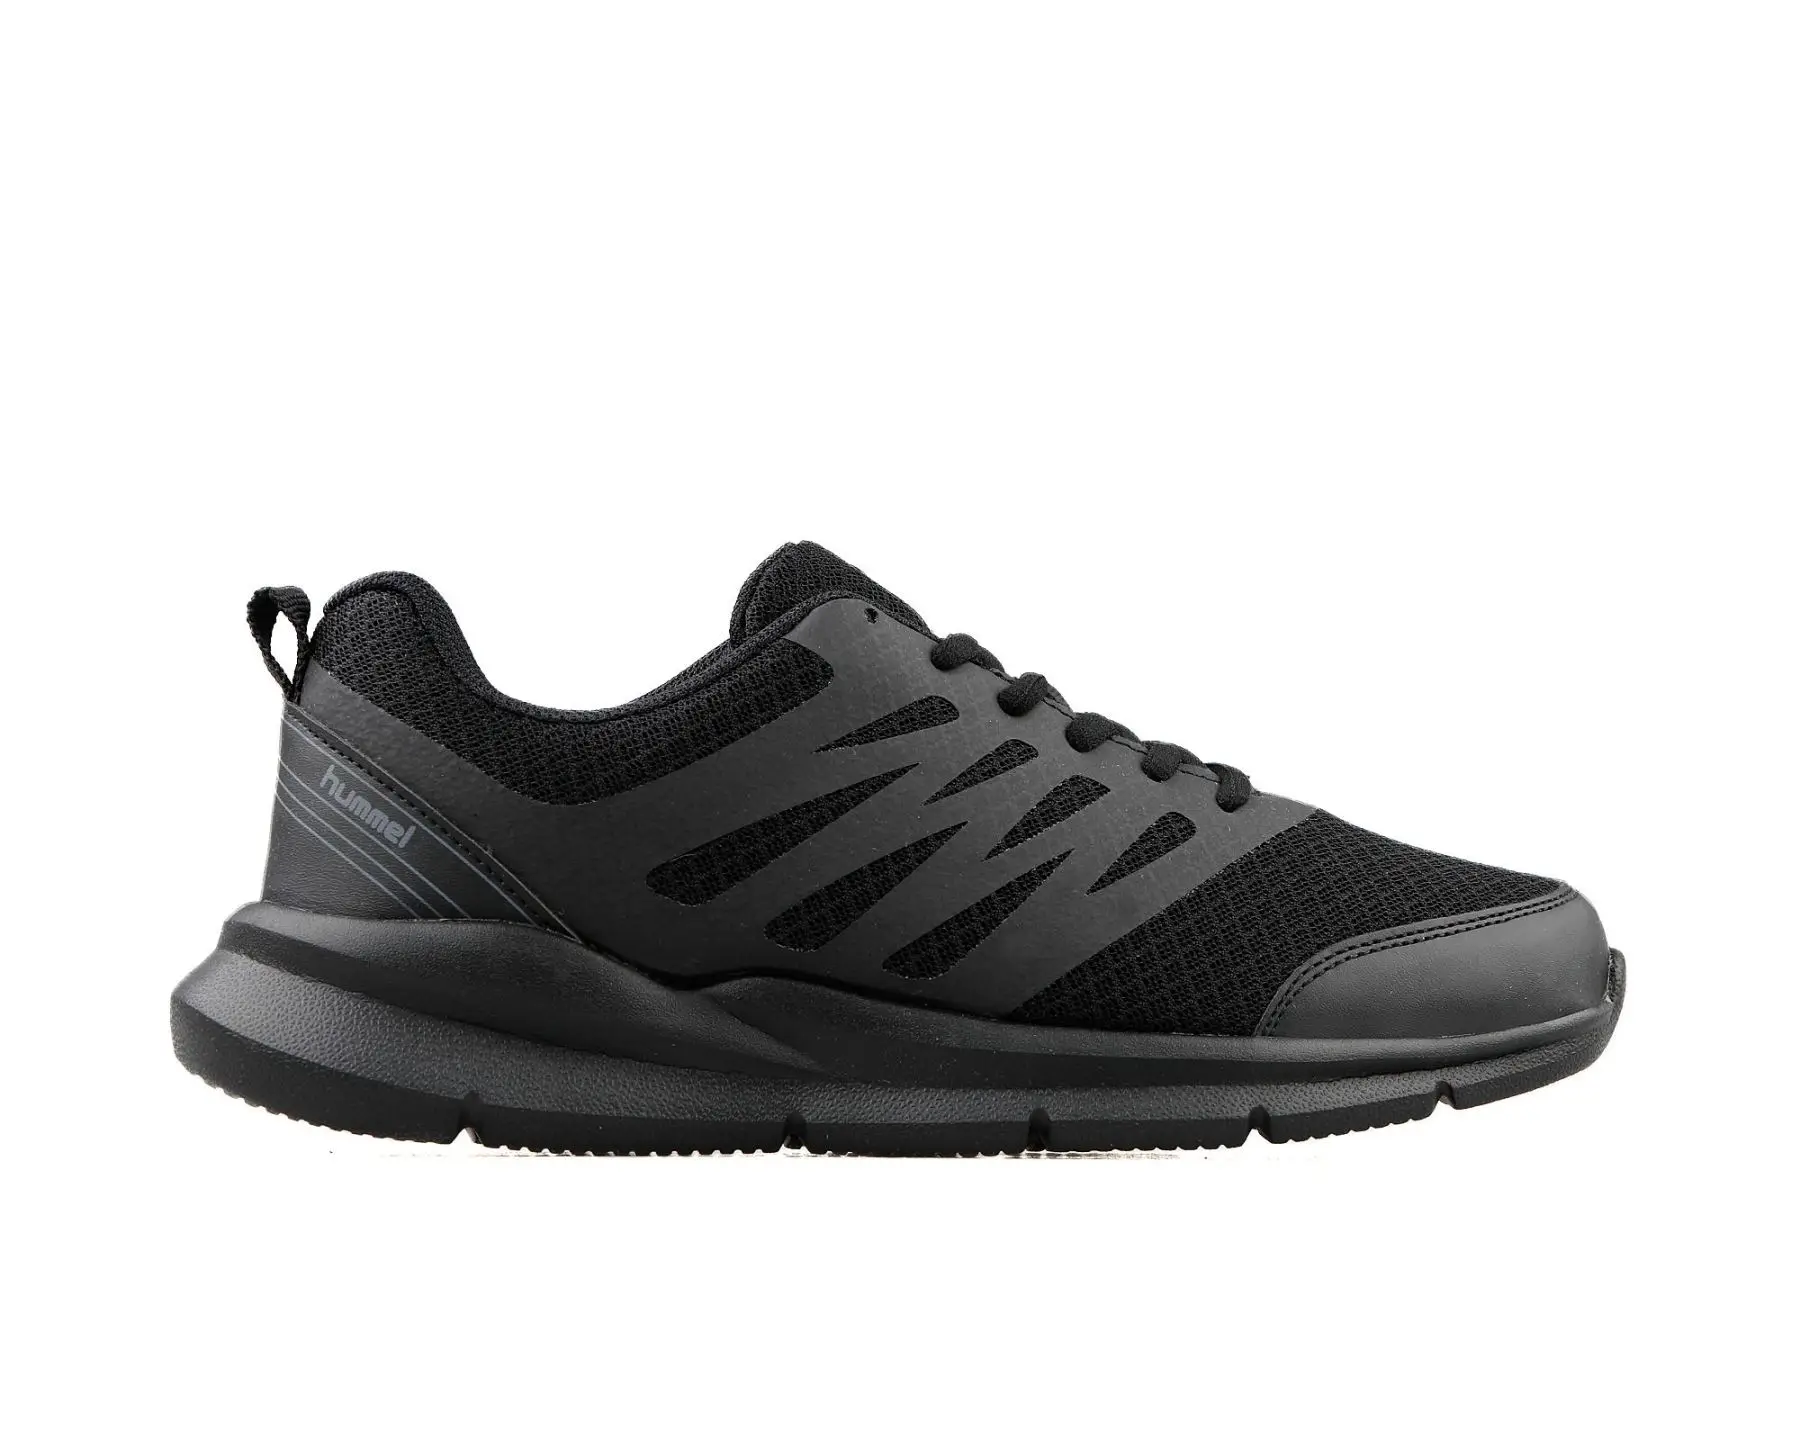 Hummel Original Men's Sneakers Casual Sneakers Black Color Casual Running Casual Walking Shoes Hml Venüs